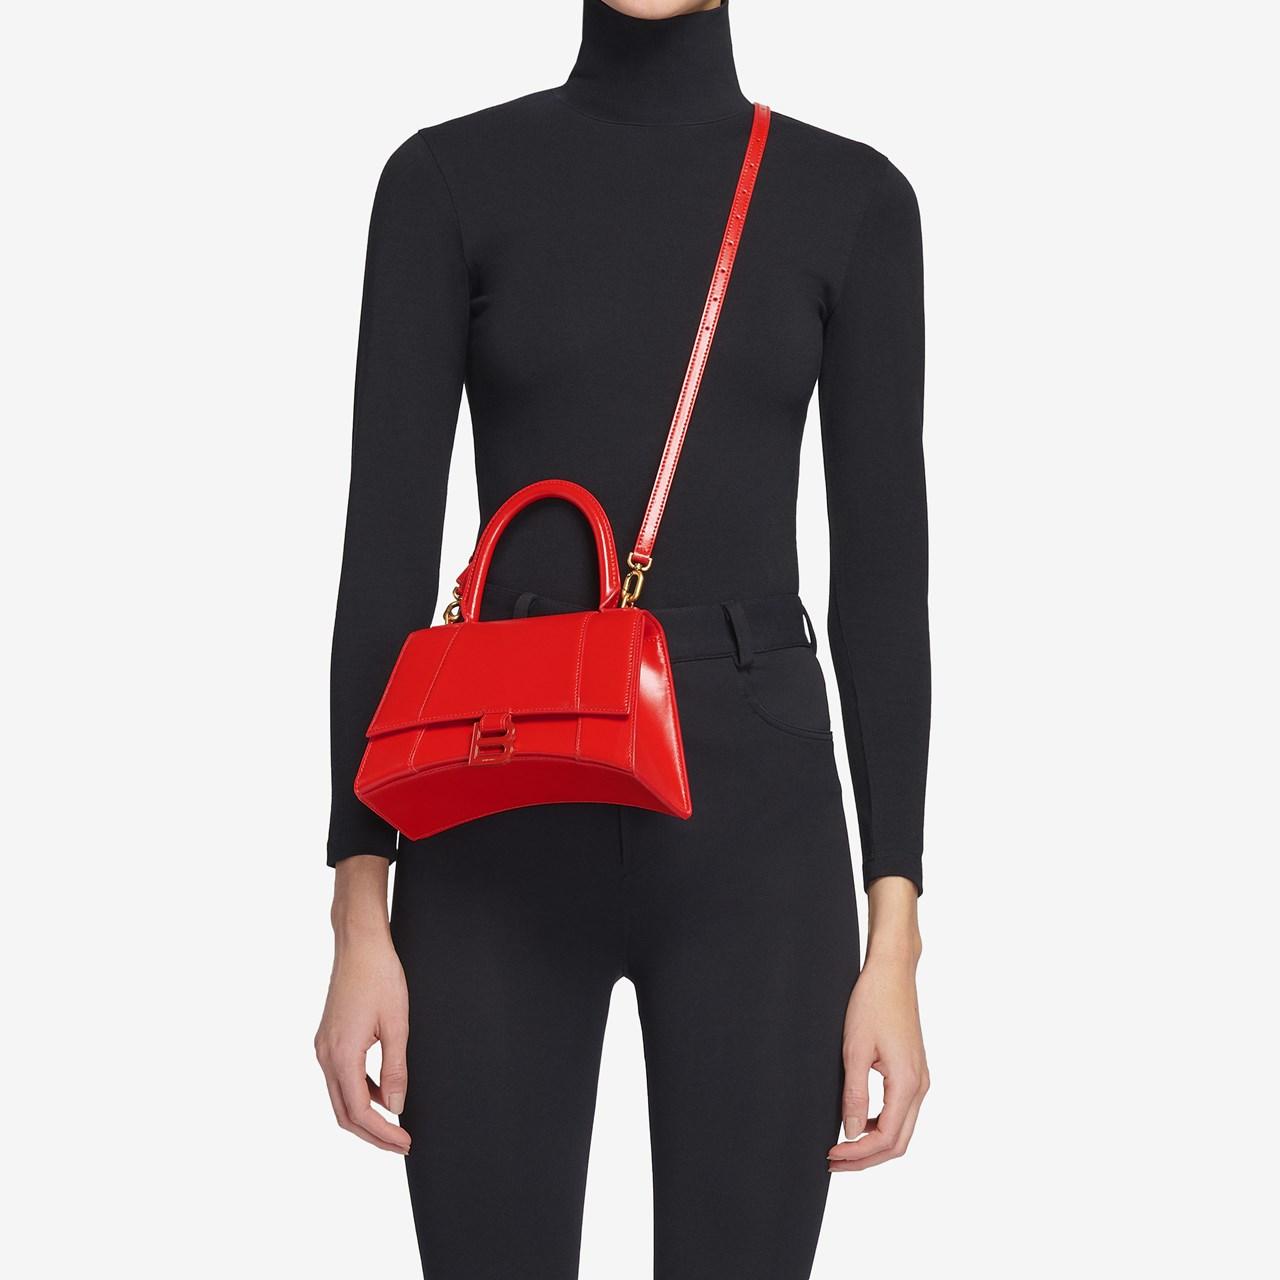 Balenciaga red Small Hourglass Top-Handle Bag